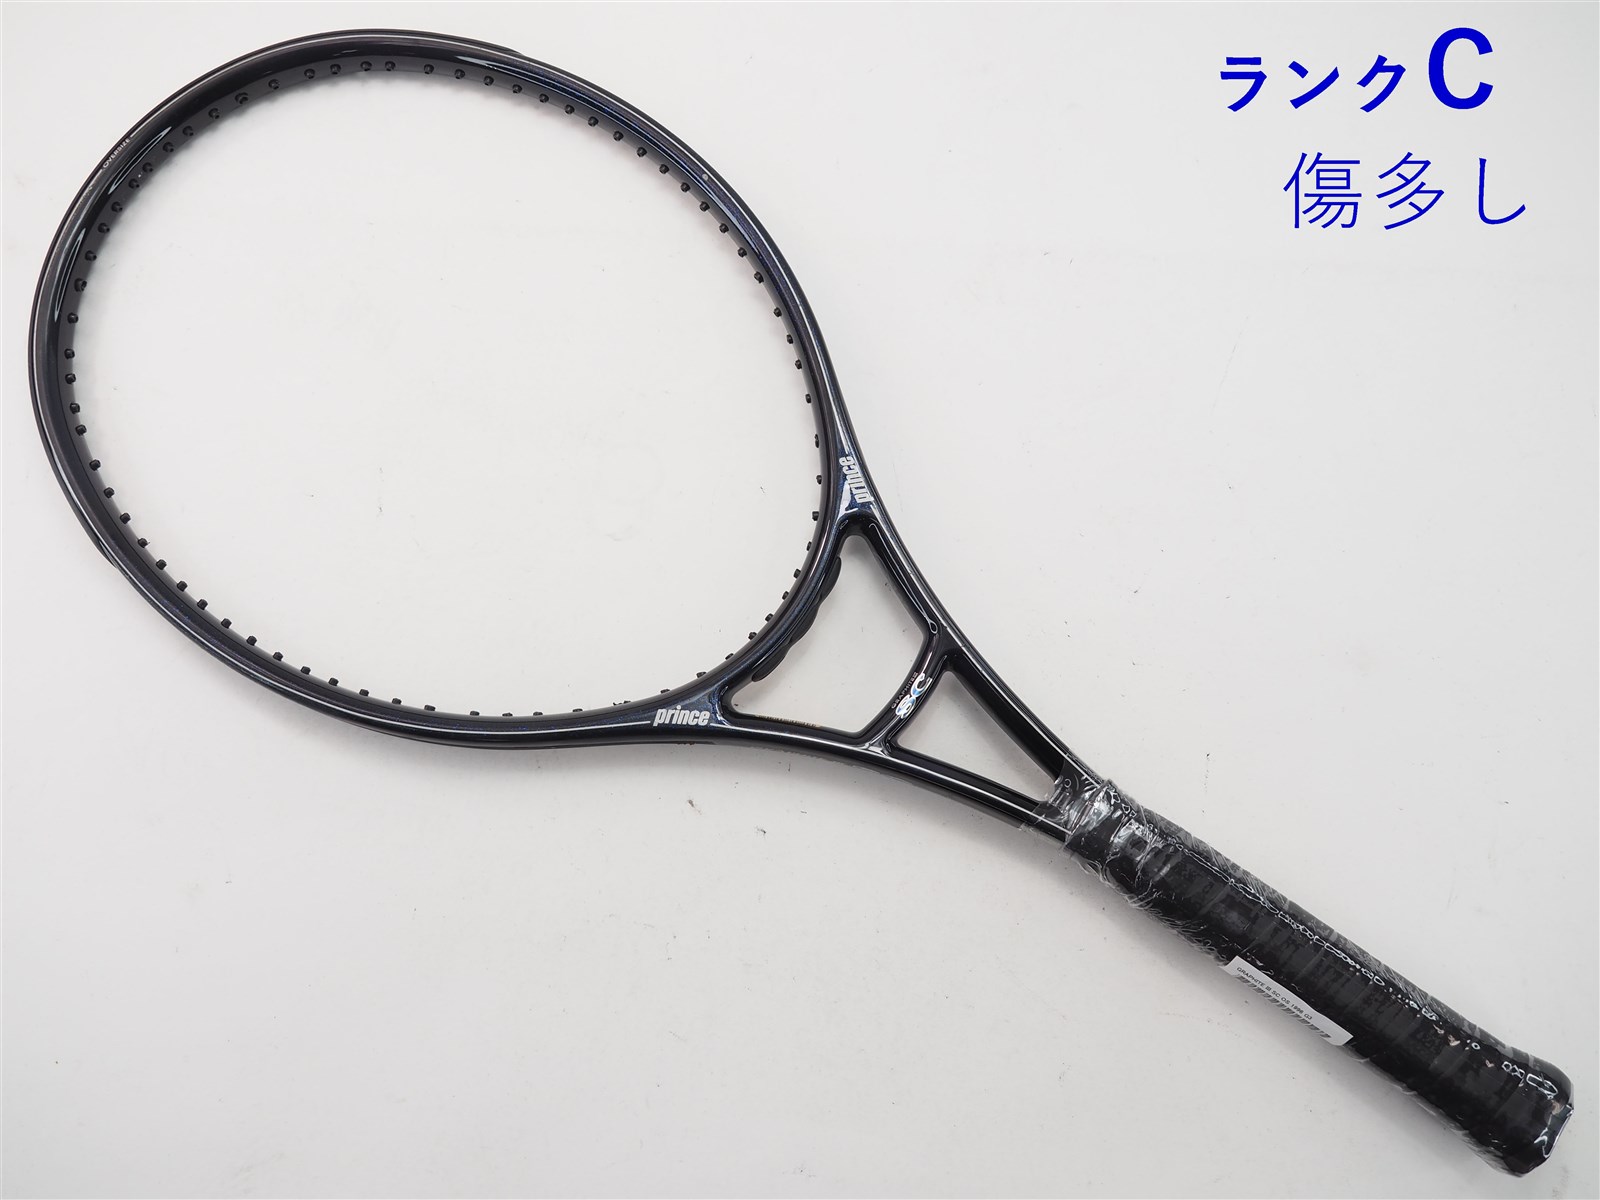 中古】プリンス グラファイト 3 SC OS 1996年モデルPRINCE GRAPHITE III SC OS 1996(G3)【中古 テニスラケット】の通販・販売|  プリンス| テニスサポートセンターへ